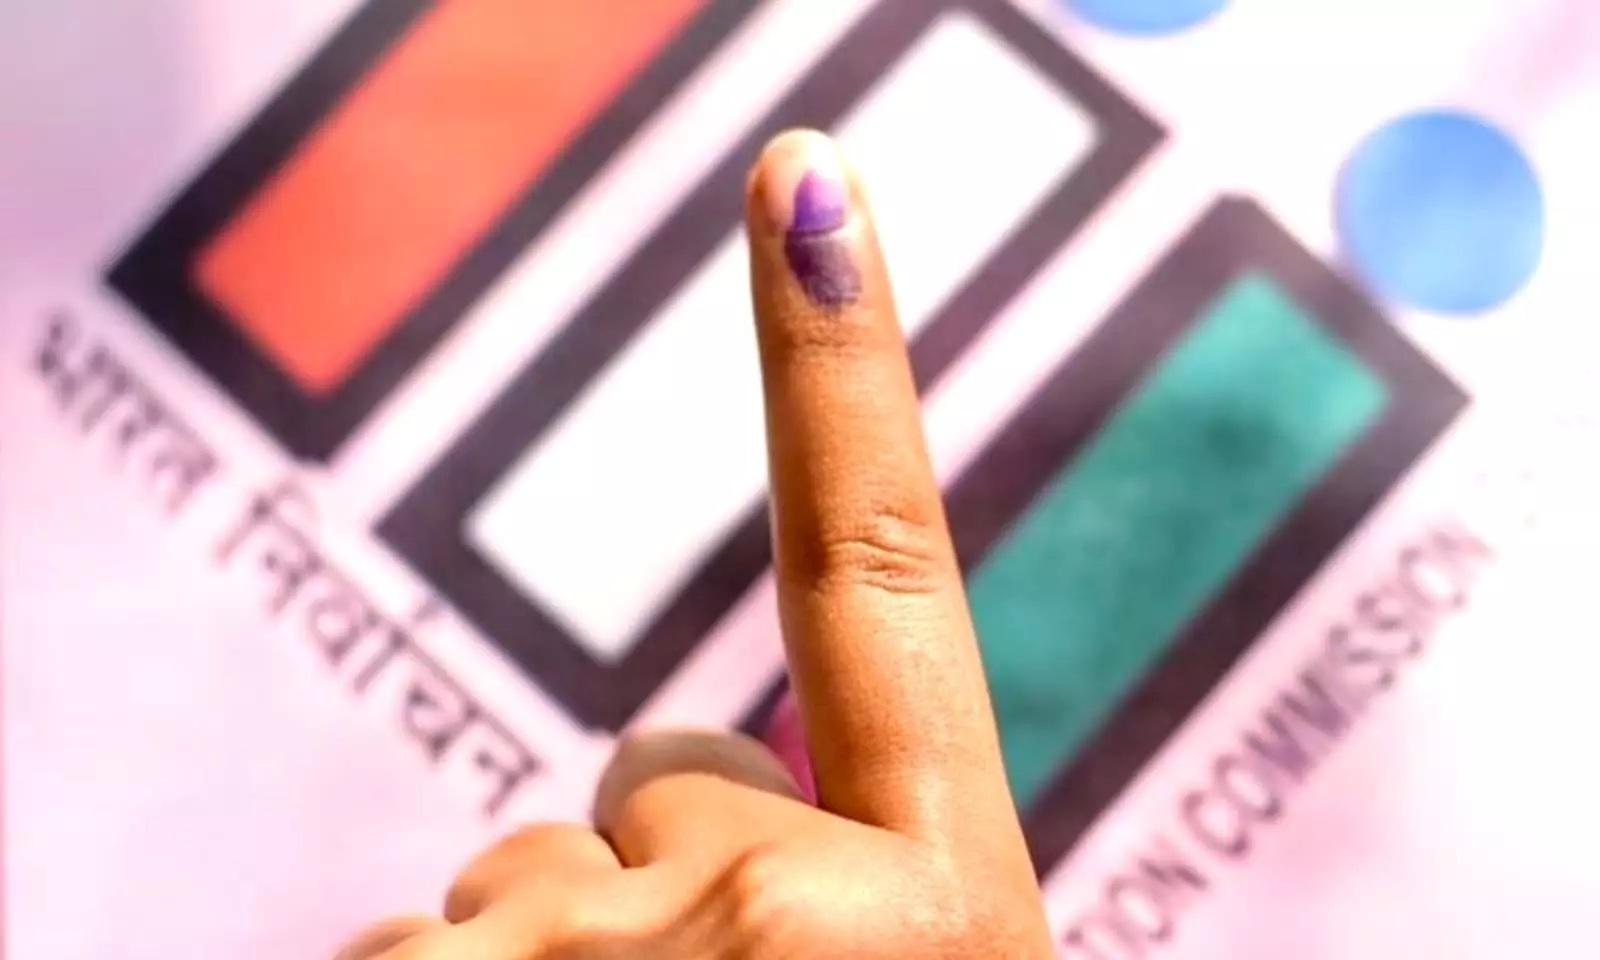 राजनांदगांव, महासमुंद और कांकेर संसदीय निर्वाचन क्षेत्रों के लिए मतदान का समय निर्धारित